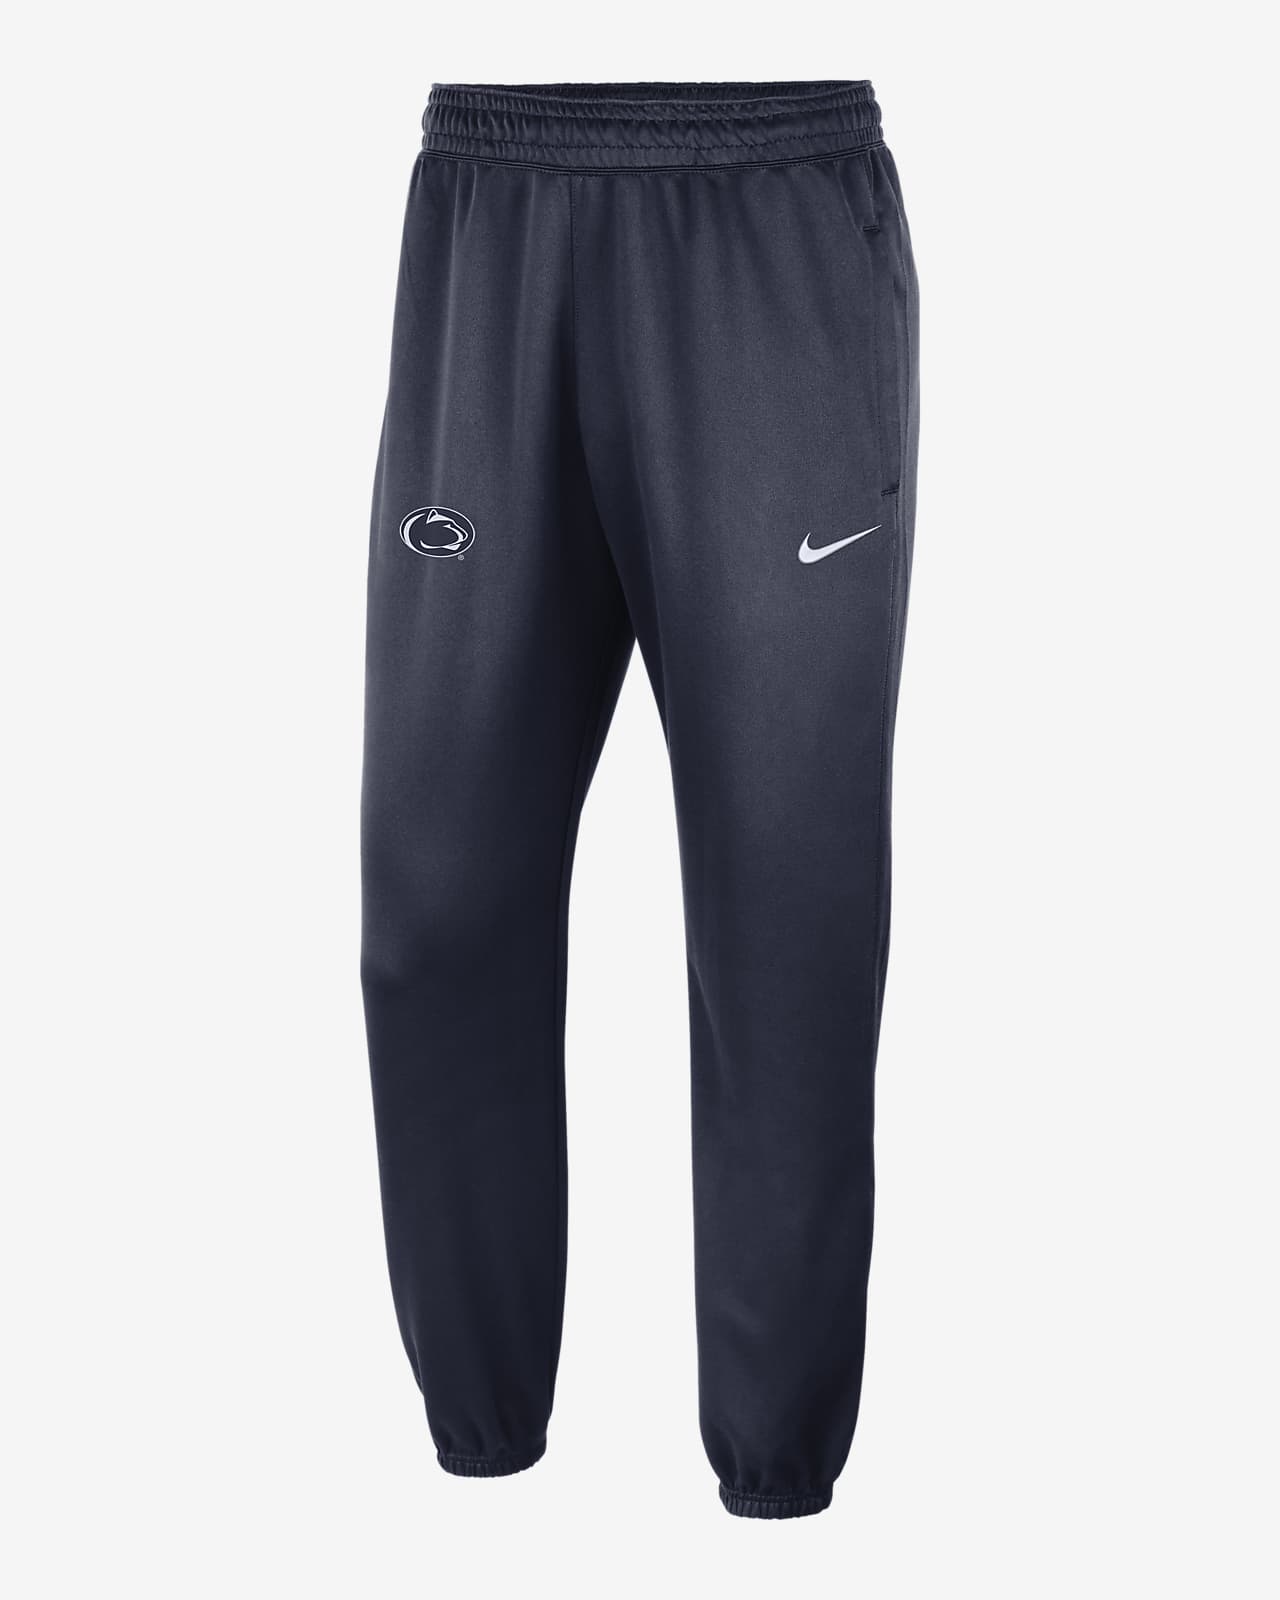 Pants para hombre: Nike, adidas, Puma y más